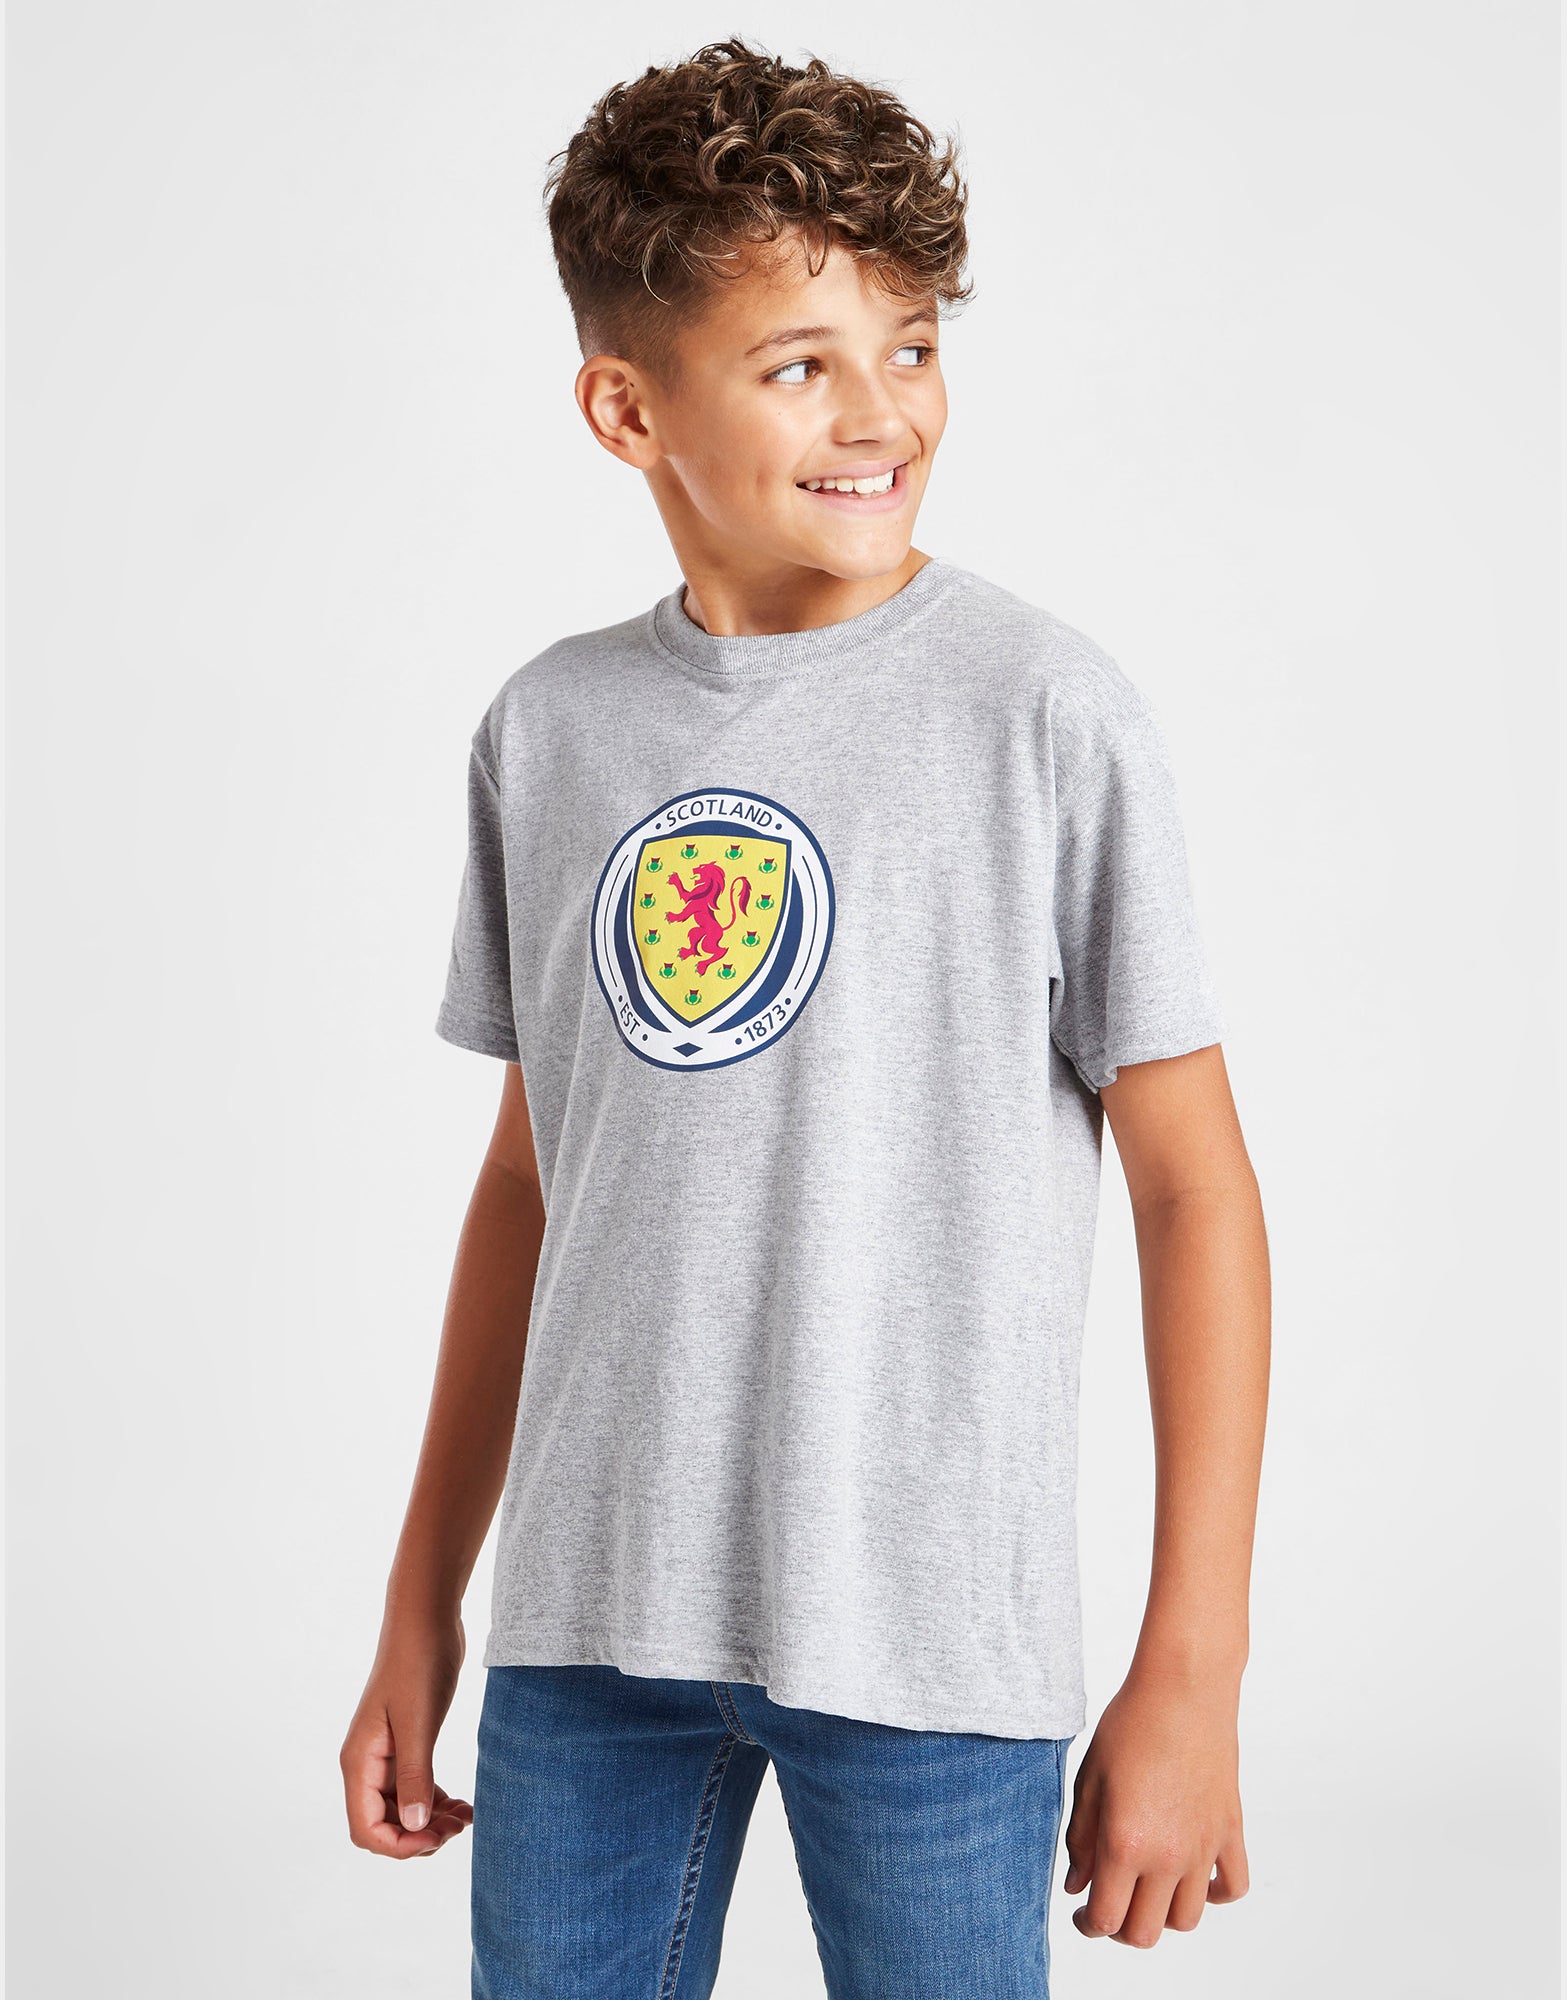 Official Team Scotland Kids FA logo T-Shirt - Grey